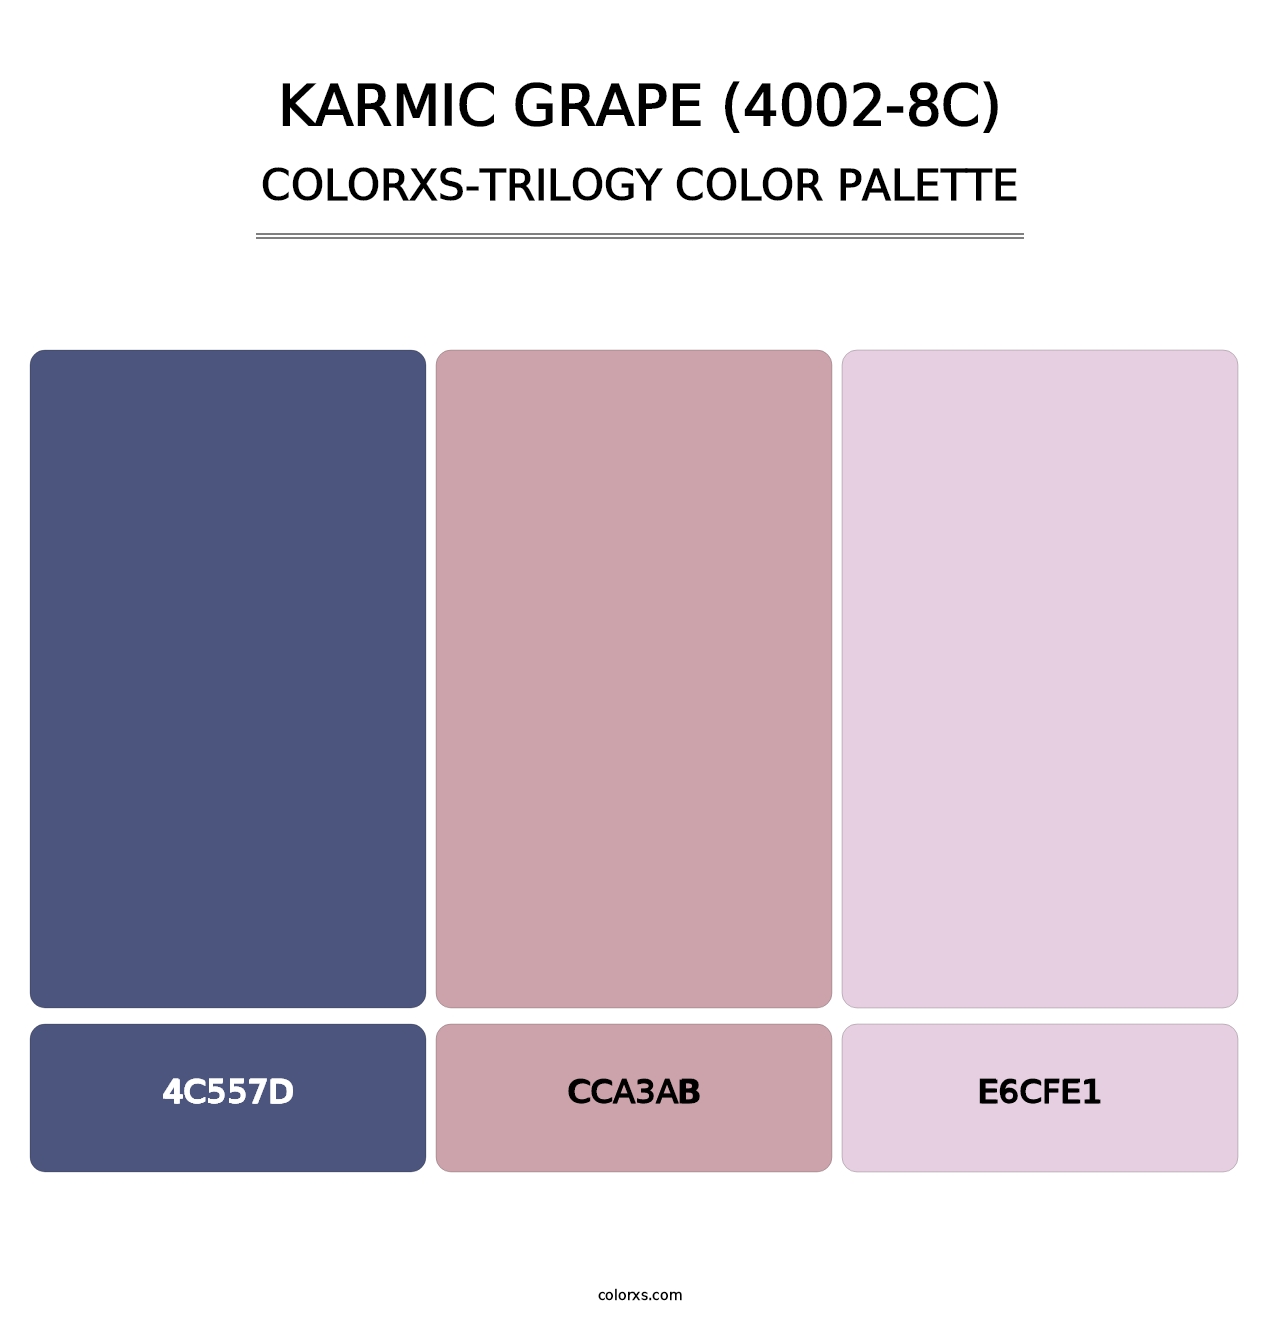 Karmic Grape (4002-8C) - Colorxs Trilogy Palette